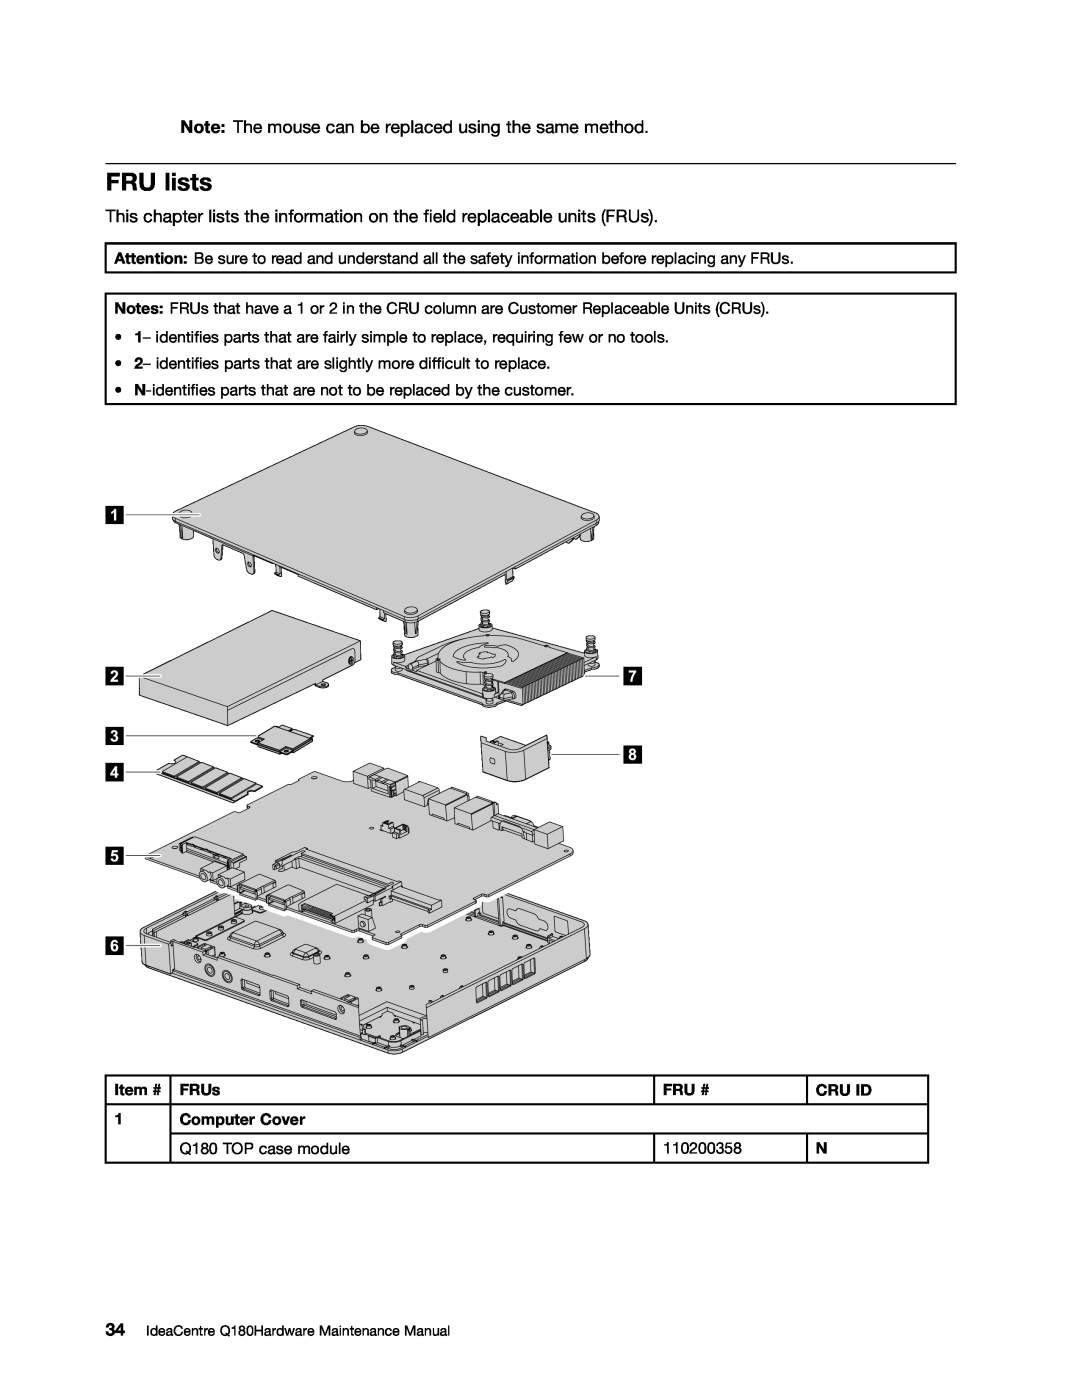 Lenovo manual FRU lists, Item #, FRUs, Fru #, Cru Id, Computer Cover, Q180 TOP case module, 110200358 